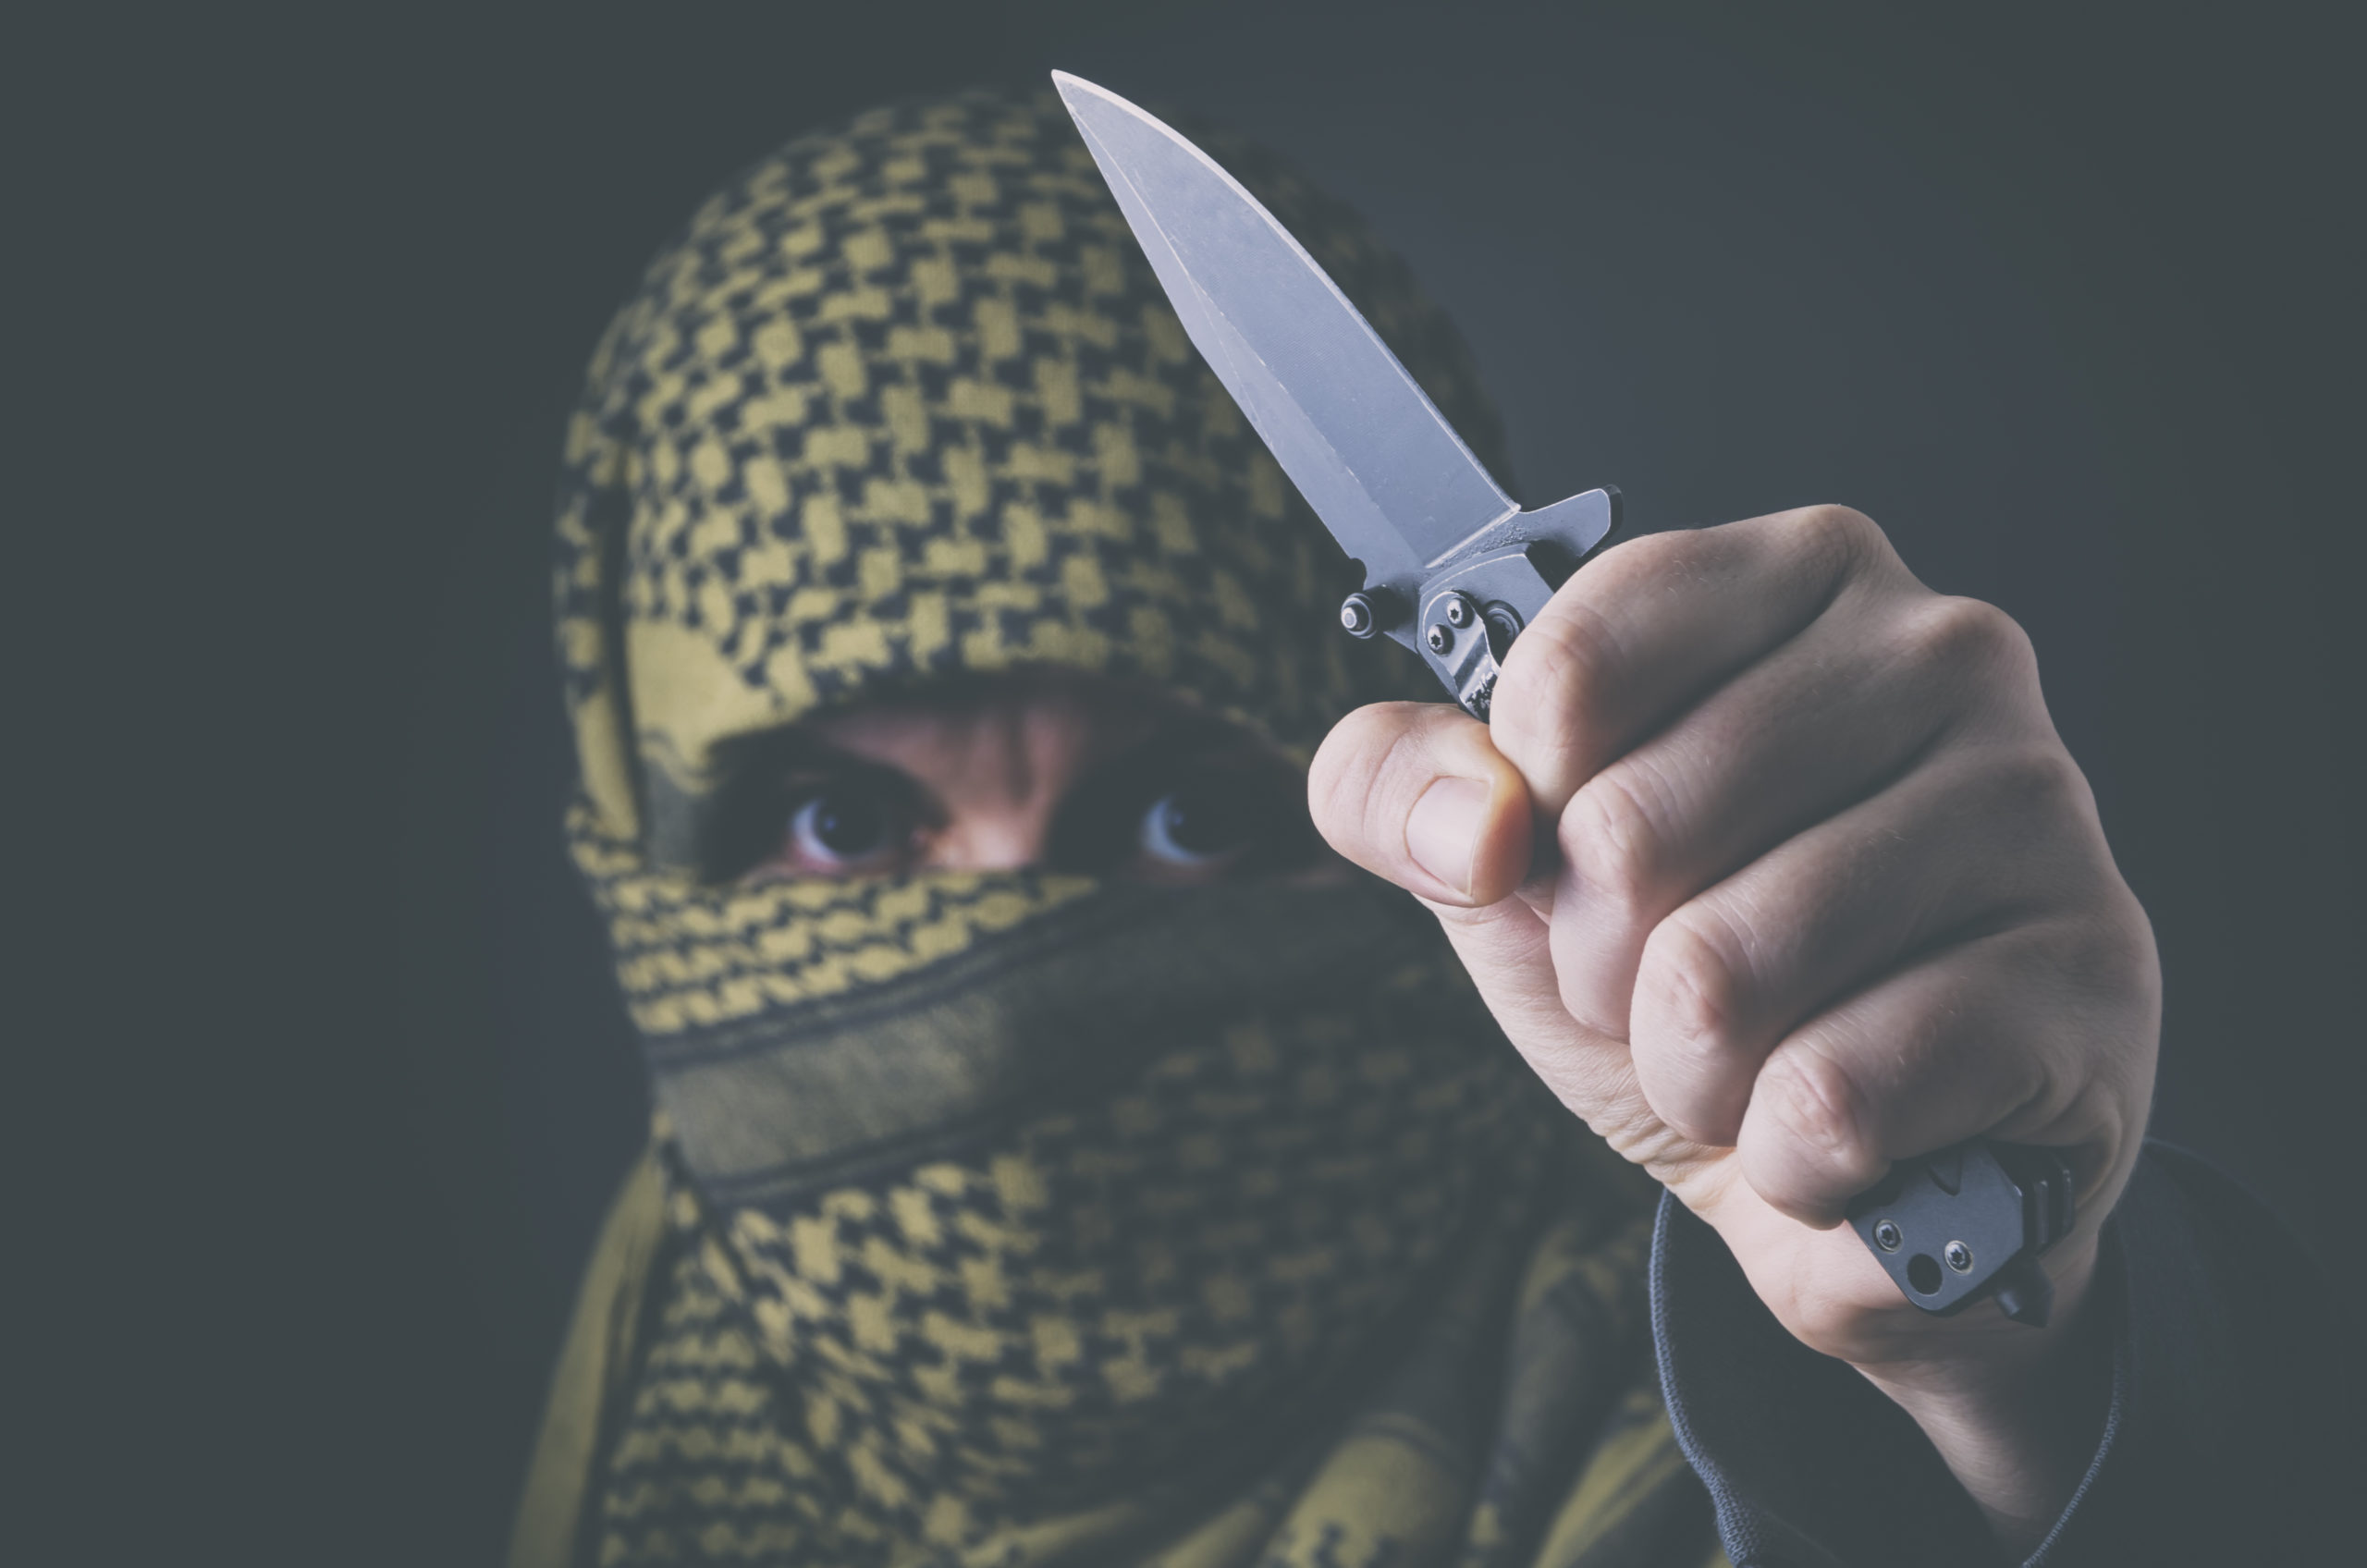 מפרסם שוב – לקראת הרצח הבא (פיגועי הסכינים)